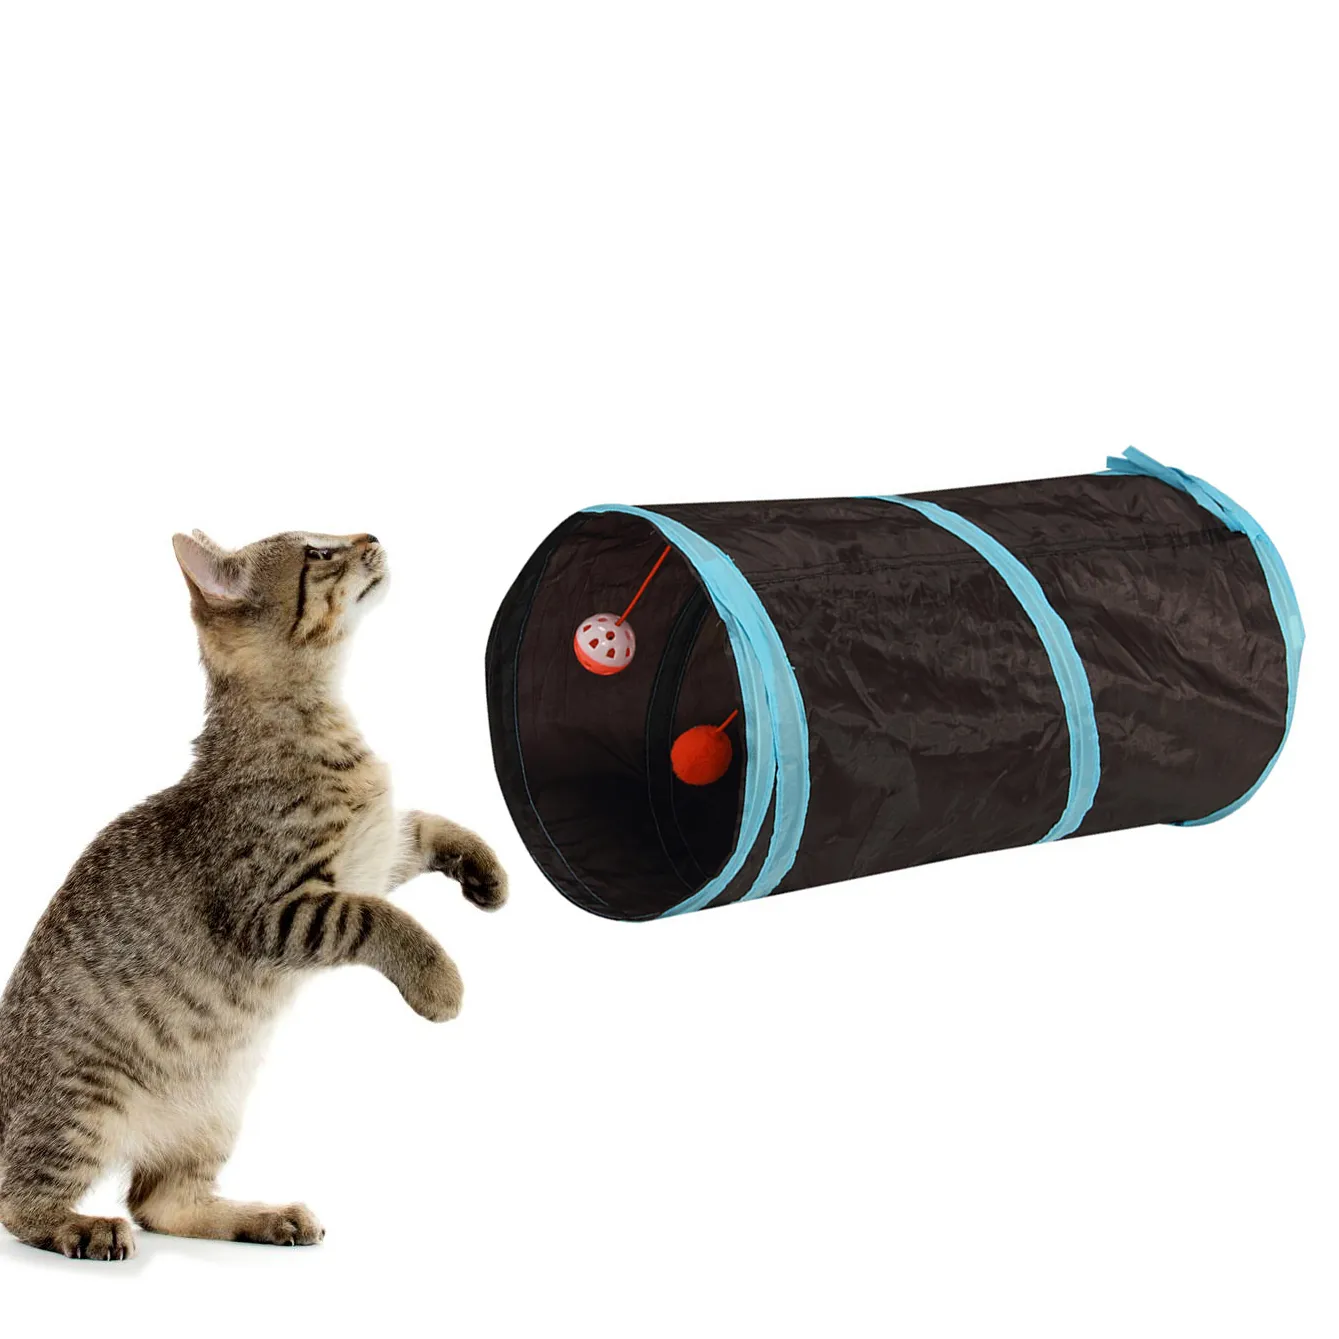 Mode Haustier zug hund katze tunnel Zusammenklappbare durchgang Katze Spielzeug Ausbildung Hause Haustier Produkt geschenk drop schiff